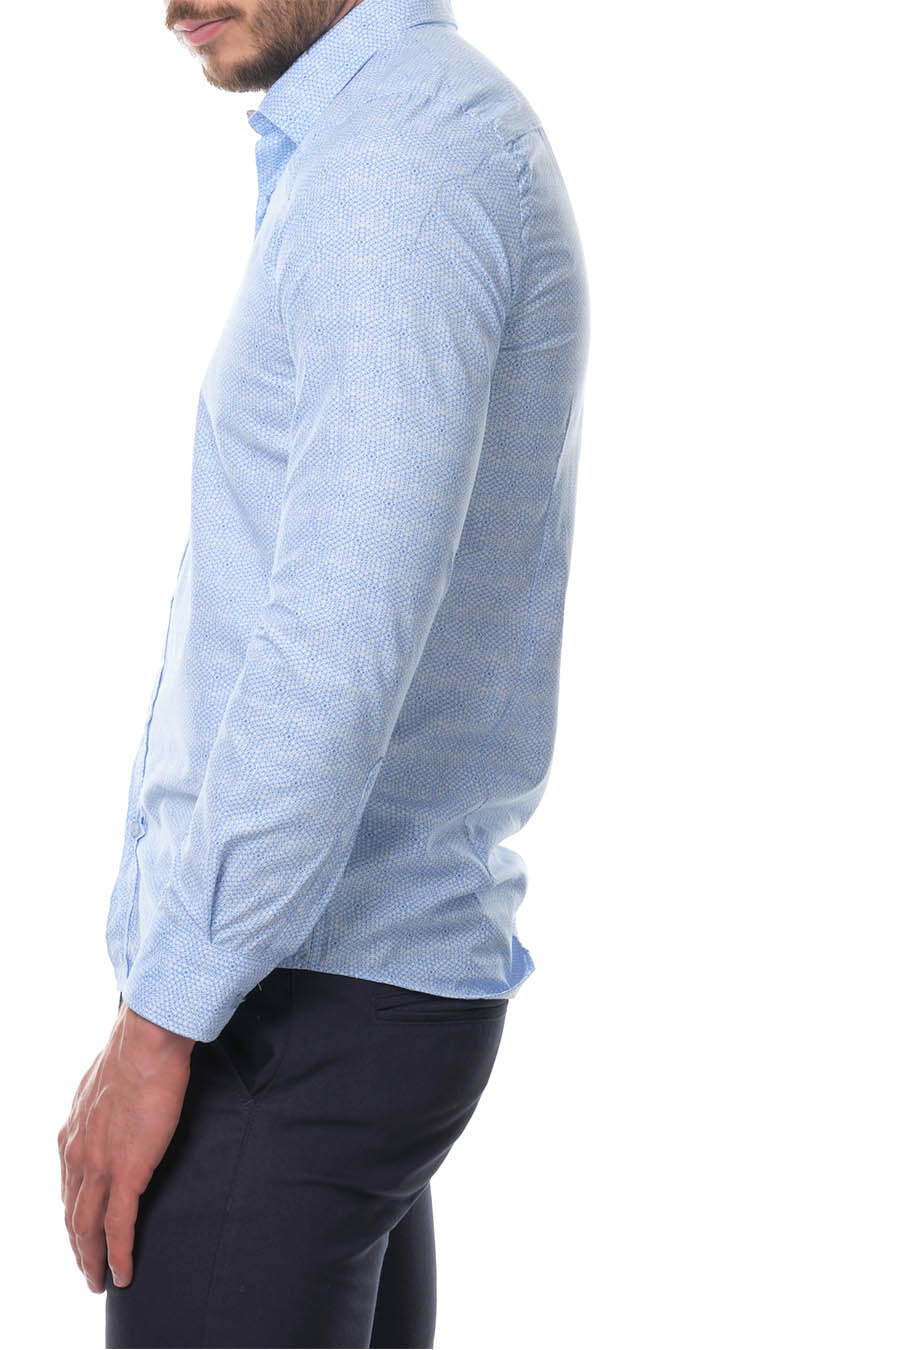 Ανδρικό πουκάμισο Iulius, Γαλάζιο 3